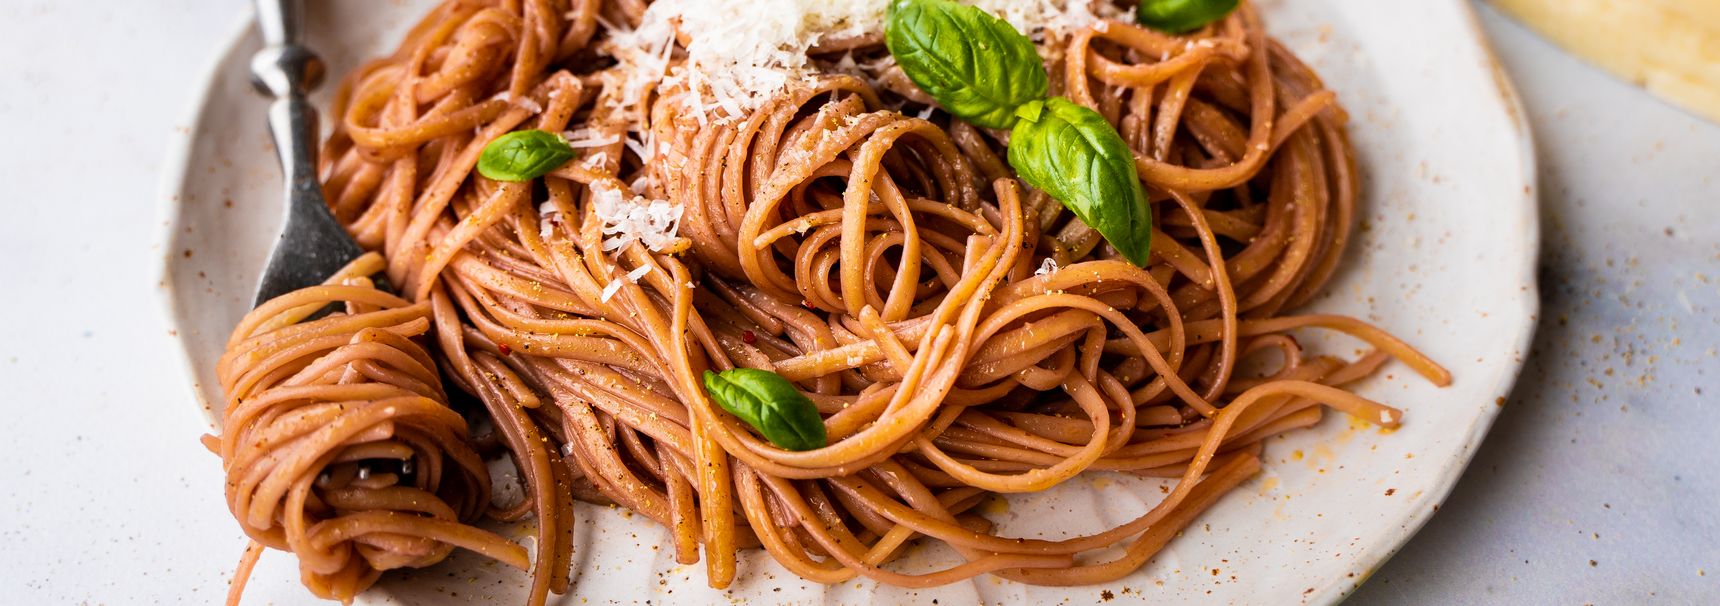 “Dronken” spaghetti met rode wijn is de nieuwe pasta pesto!